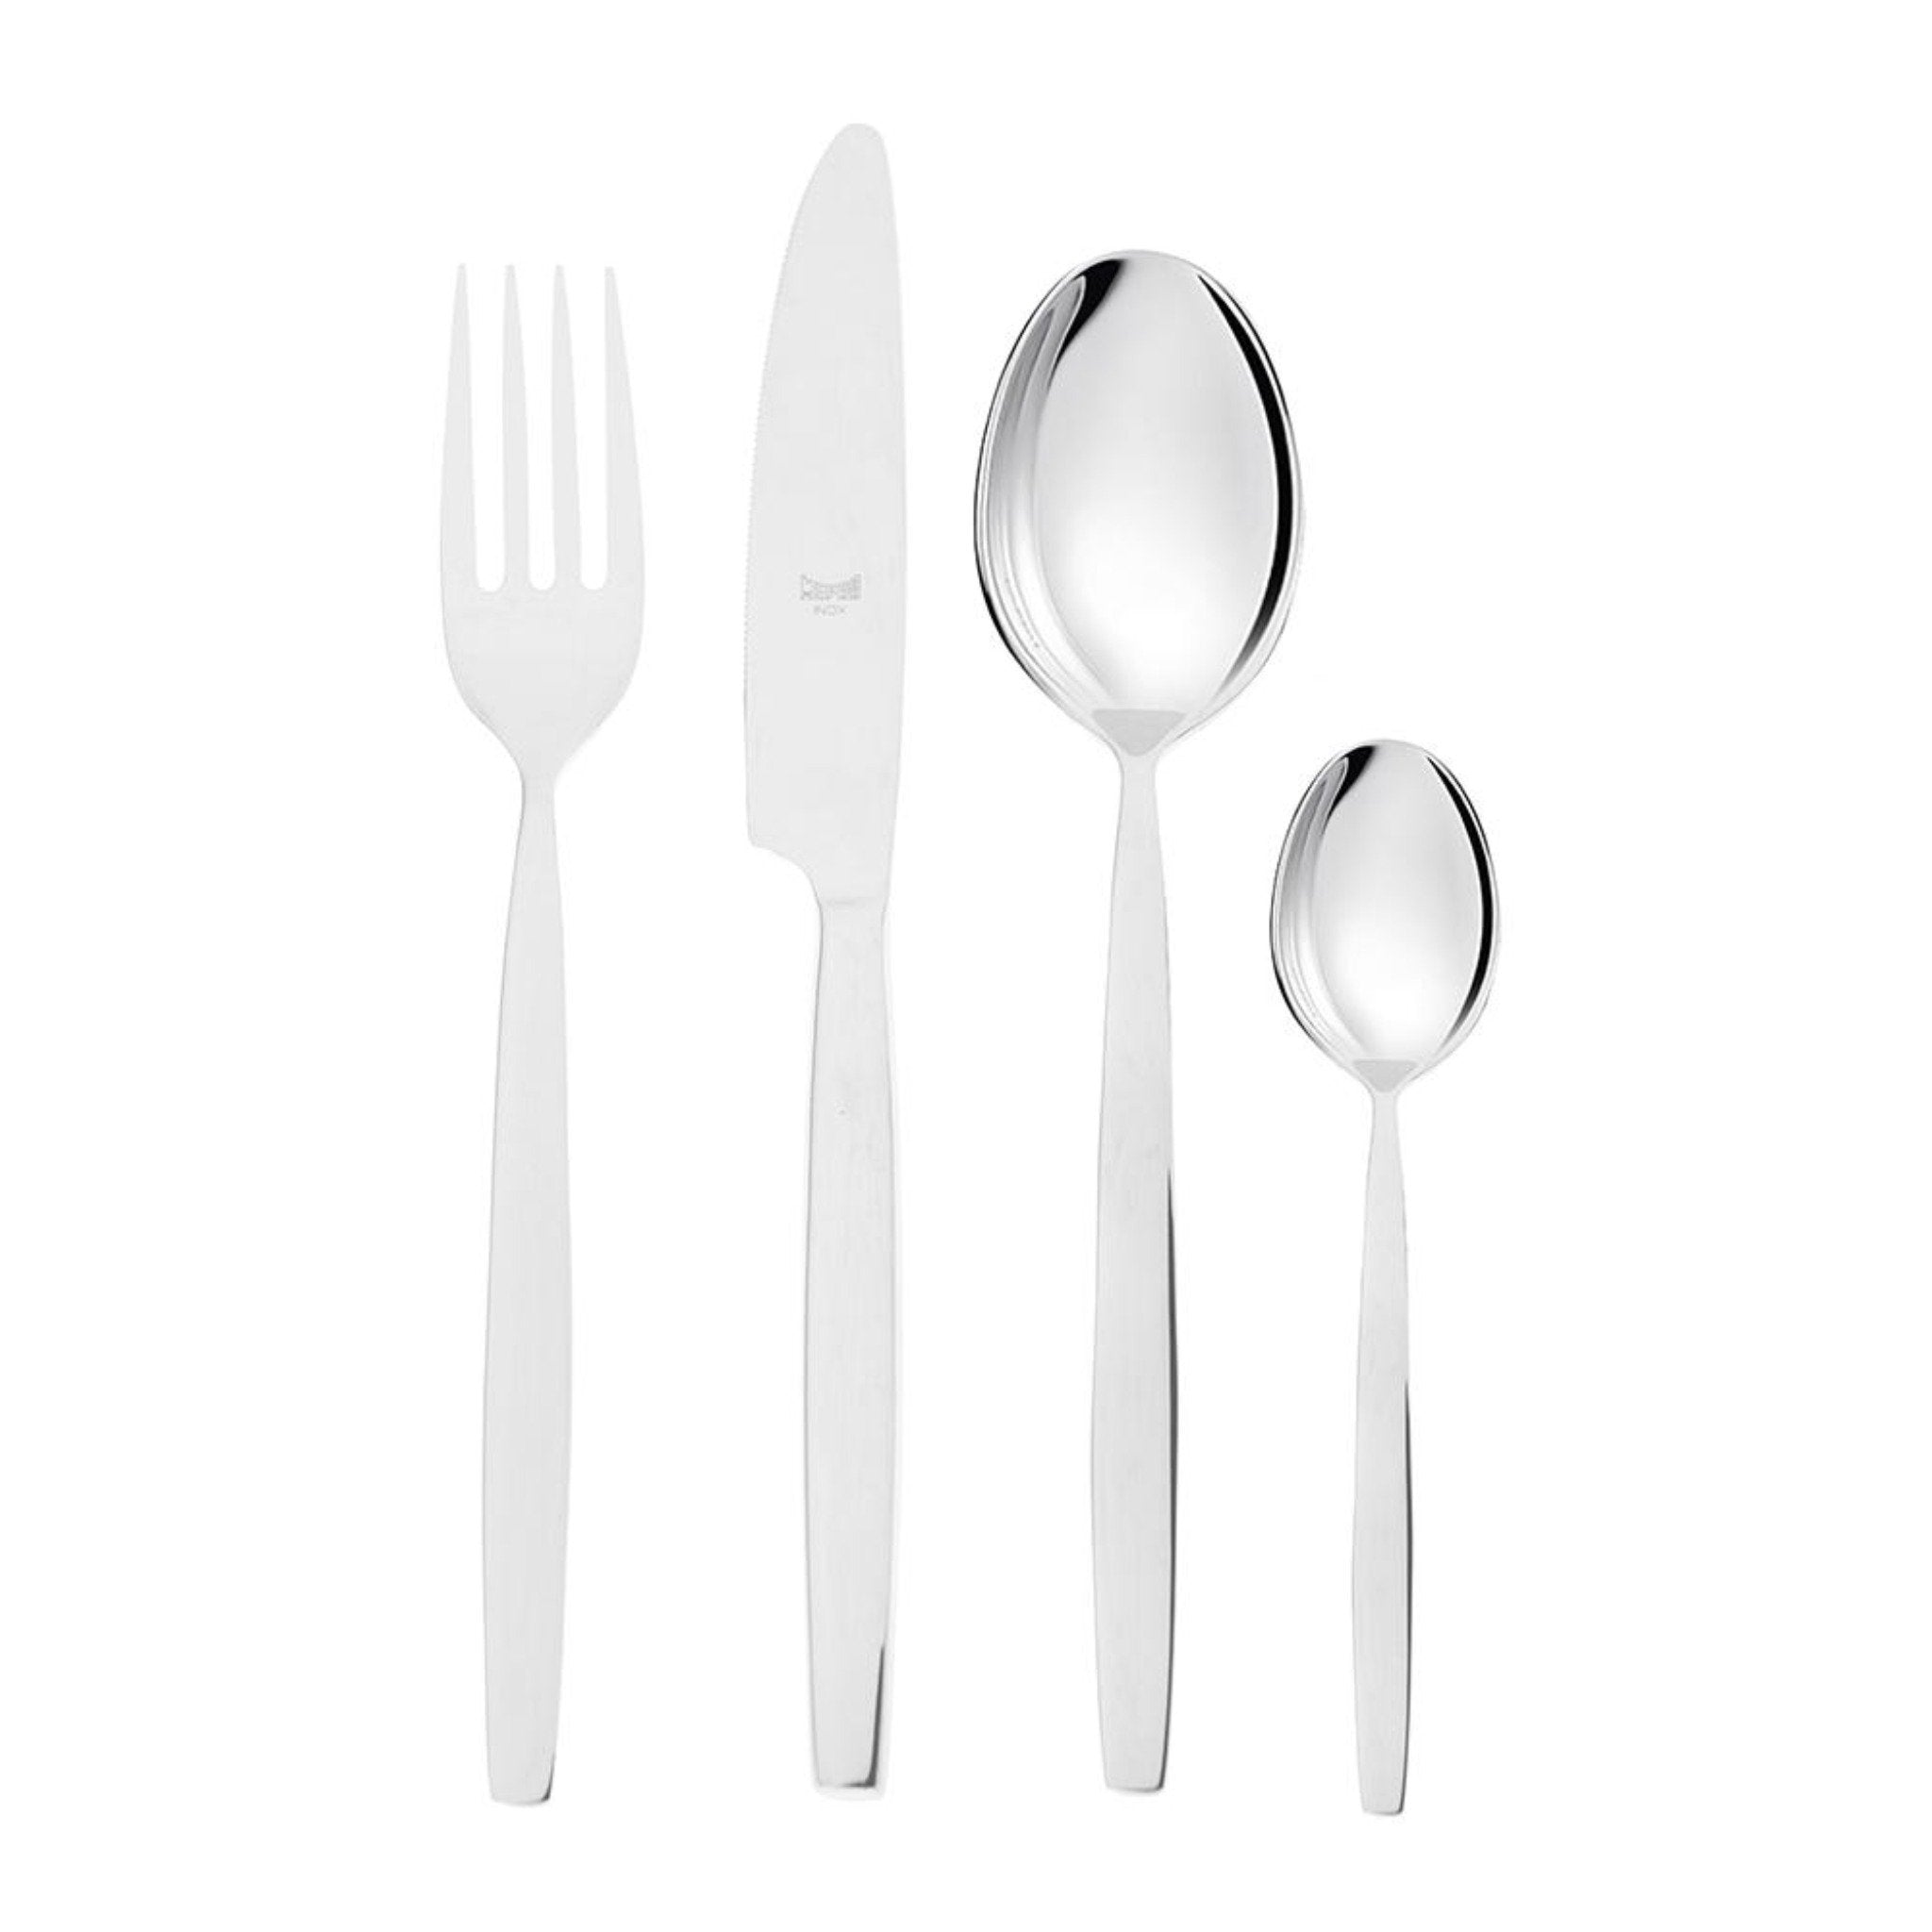 ميبرا - طقم أدوات مائدة للاستخدام اليومي 24 قطعة - ستانلس ستيل 18/10 - 100002123